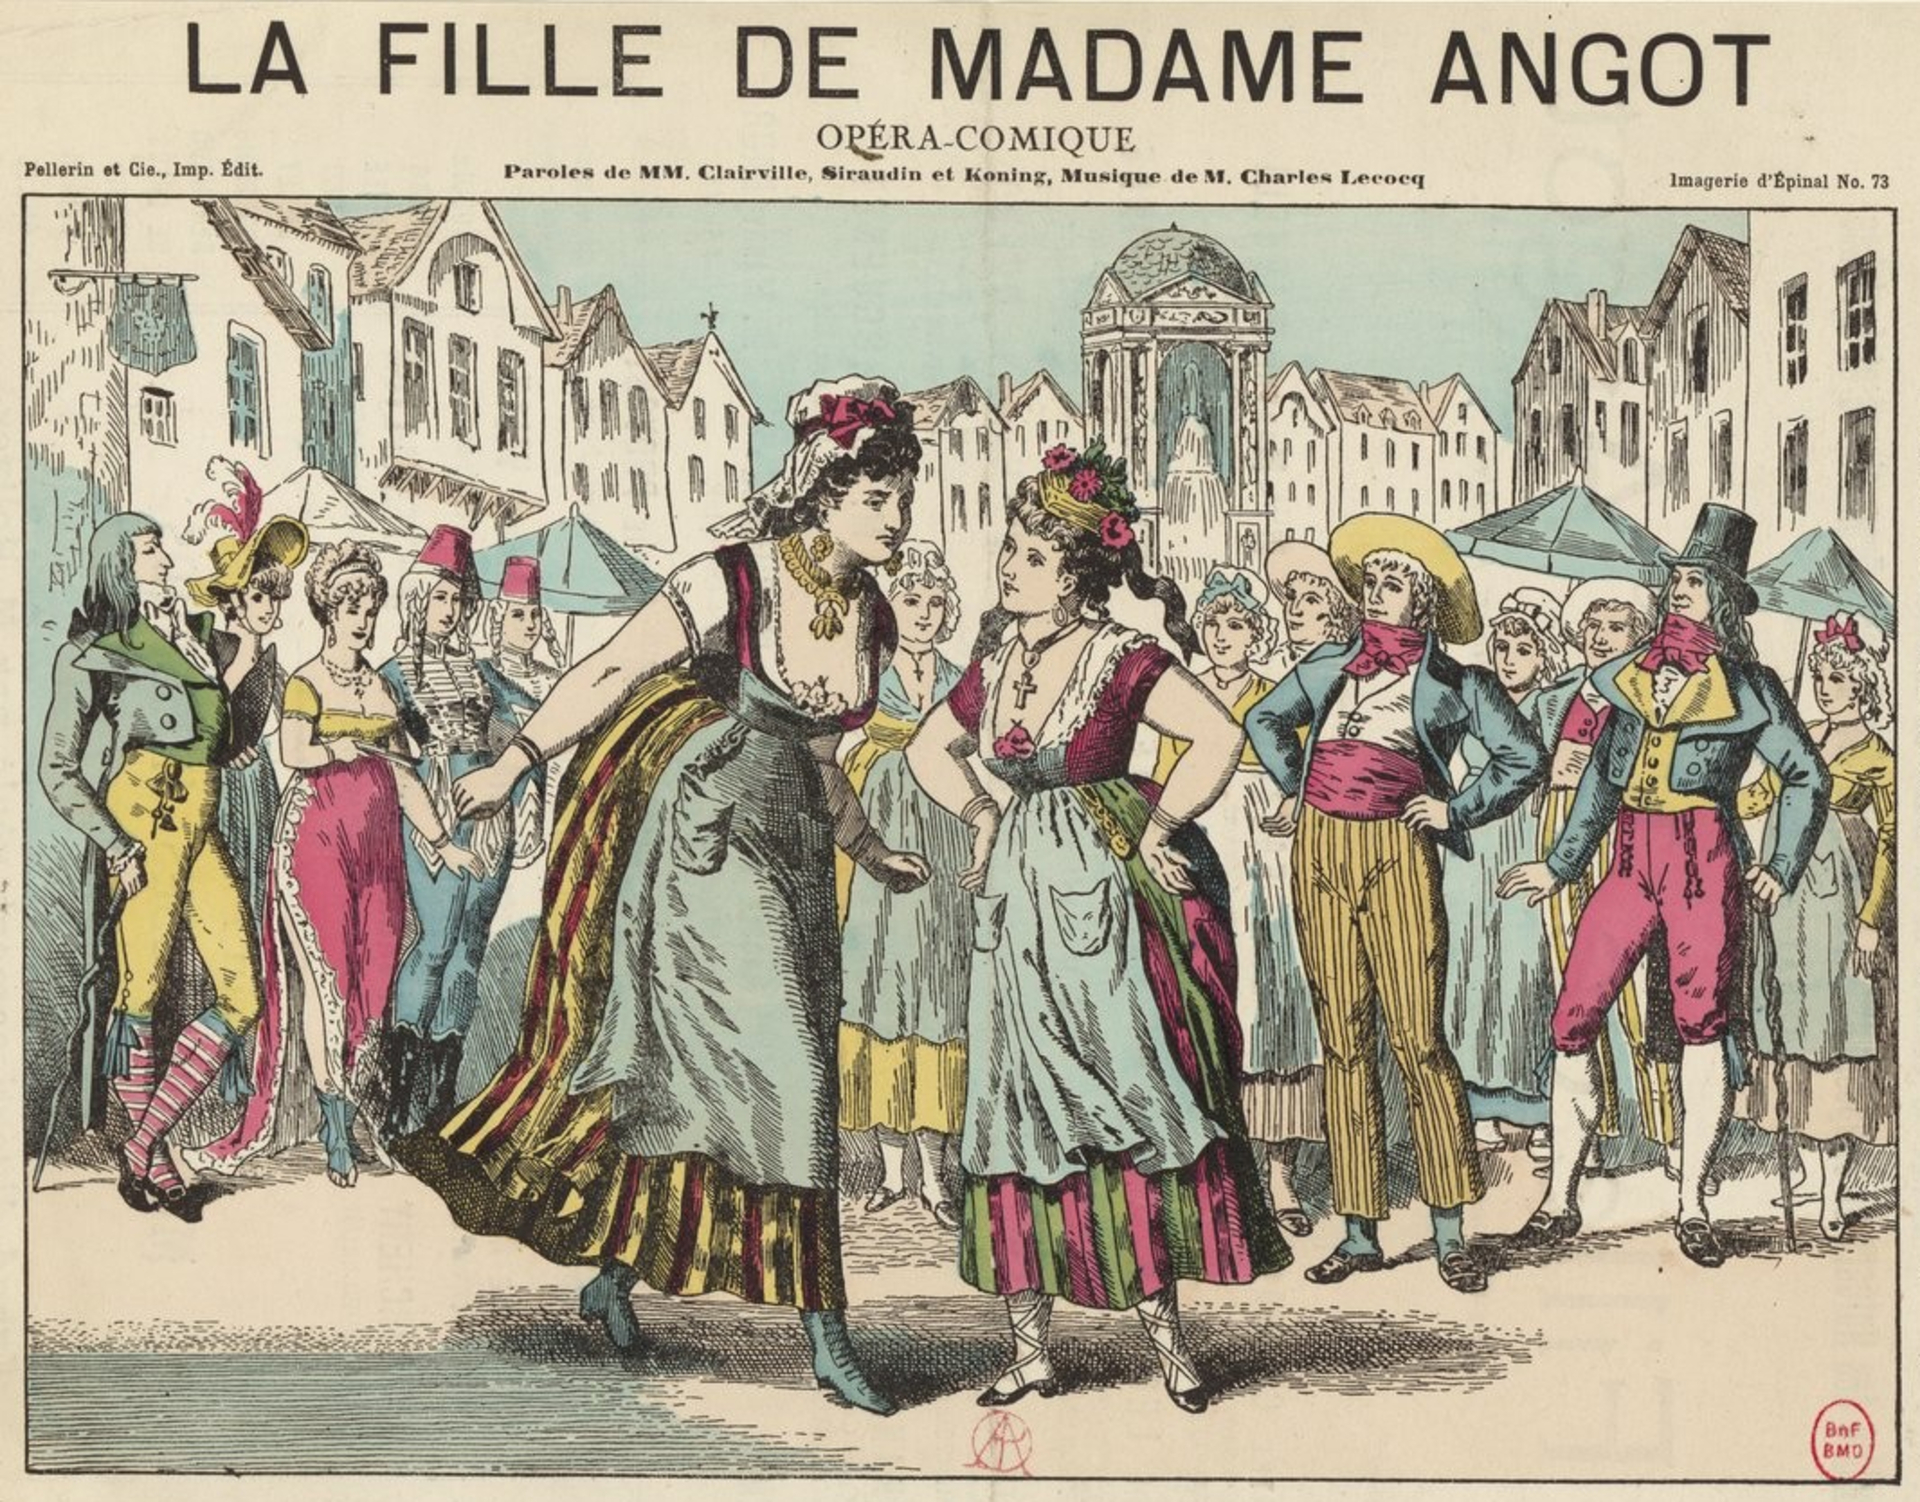 Szenenbild der Pariser Uraufführung der «Mamsell Angot»